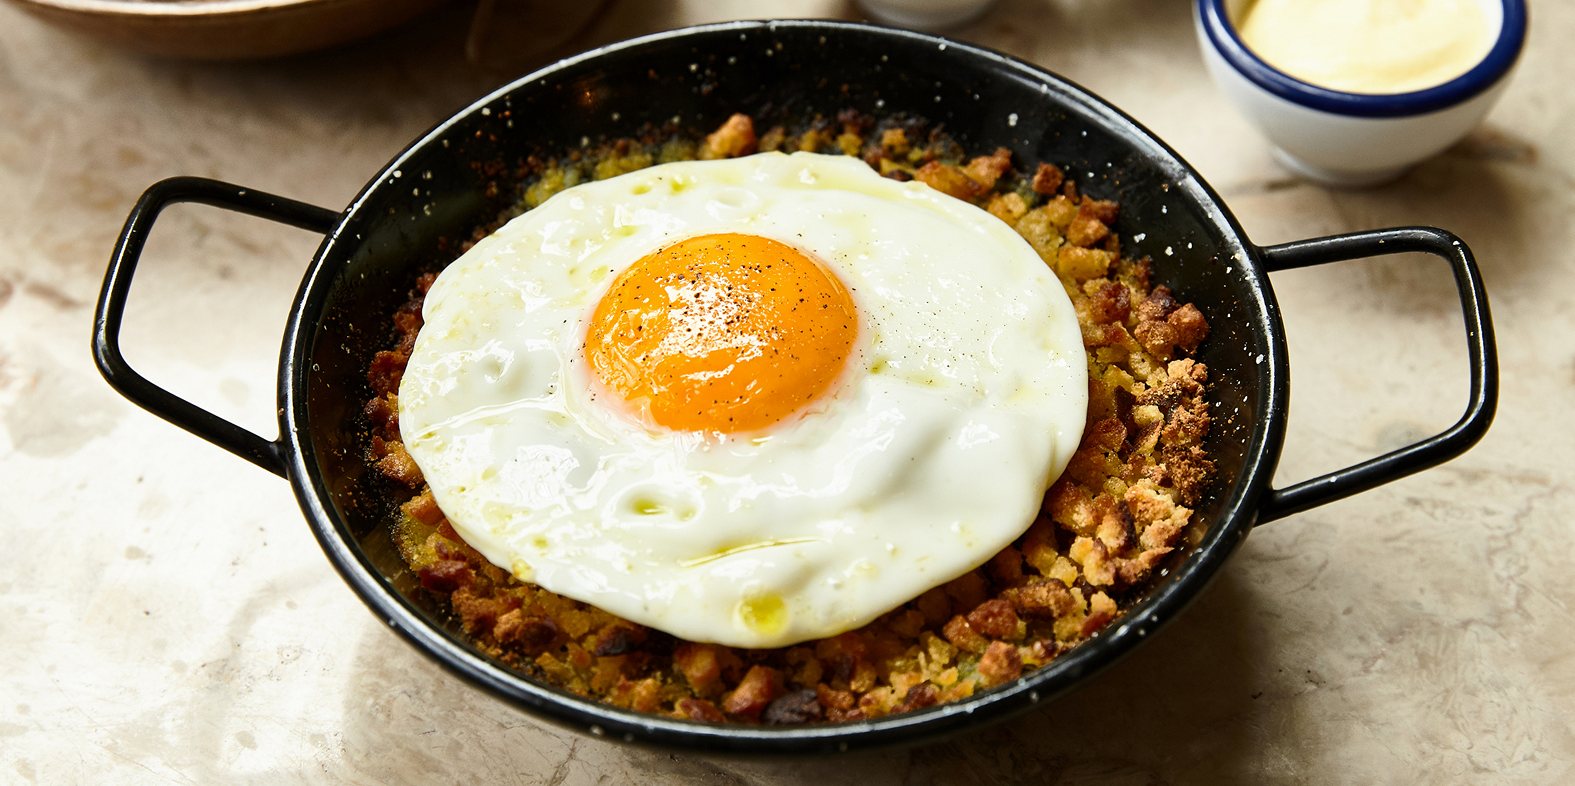 Este bacalhau lascado com ovo estrelado integra o menu de almoço da Taberna do Bairro do Avillez ©DR